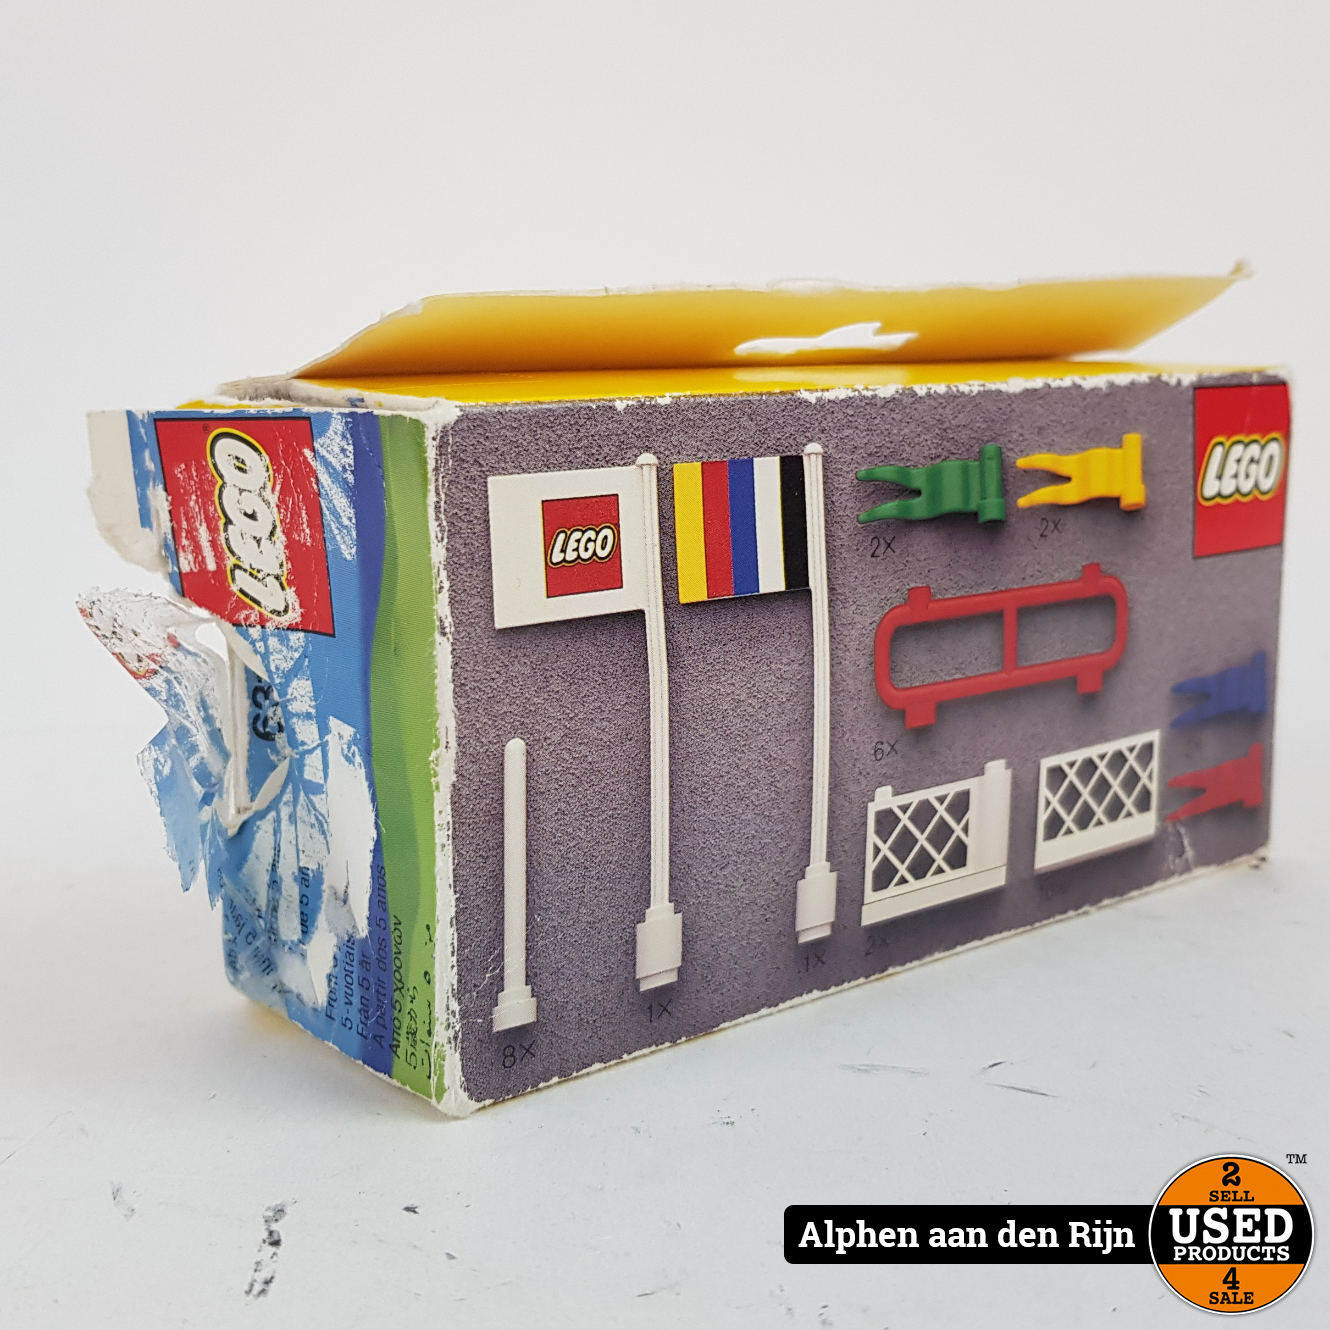 Lego Legoland NIEUW uit doos - Used Products Alphen aan den Rijn